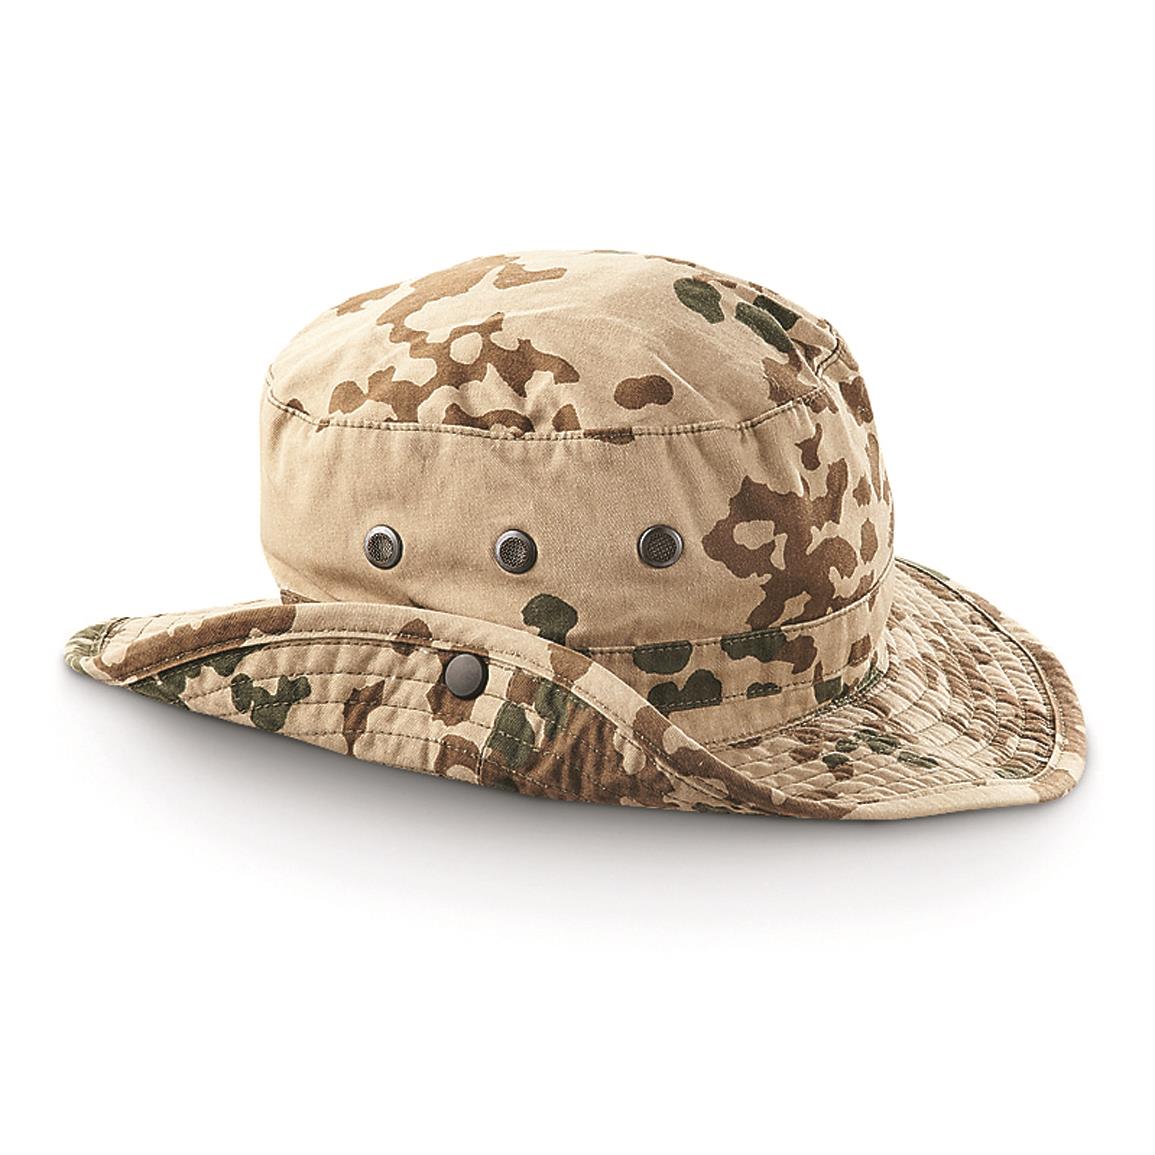 German Military Surplus Desert Boonie Hats, 2 Pack, Used